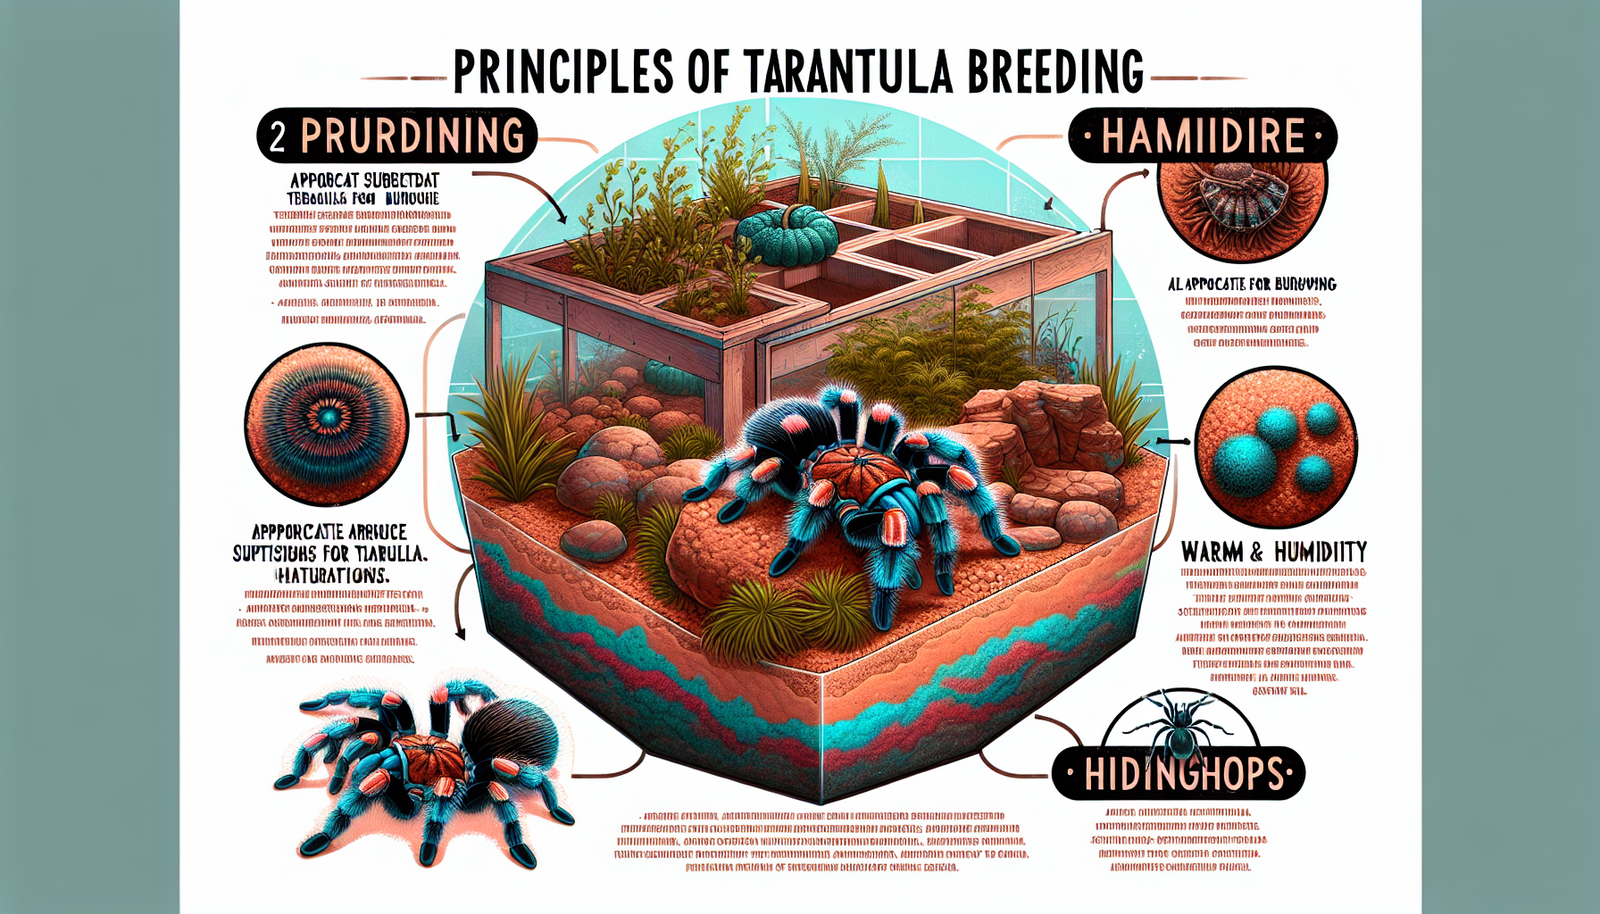 How Do I Create A Naturalistic Habitat For Breeding Tarantulas?